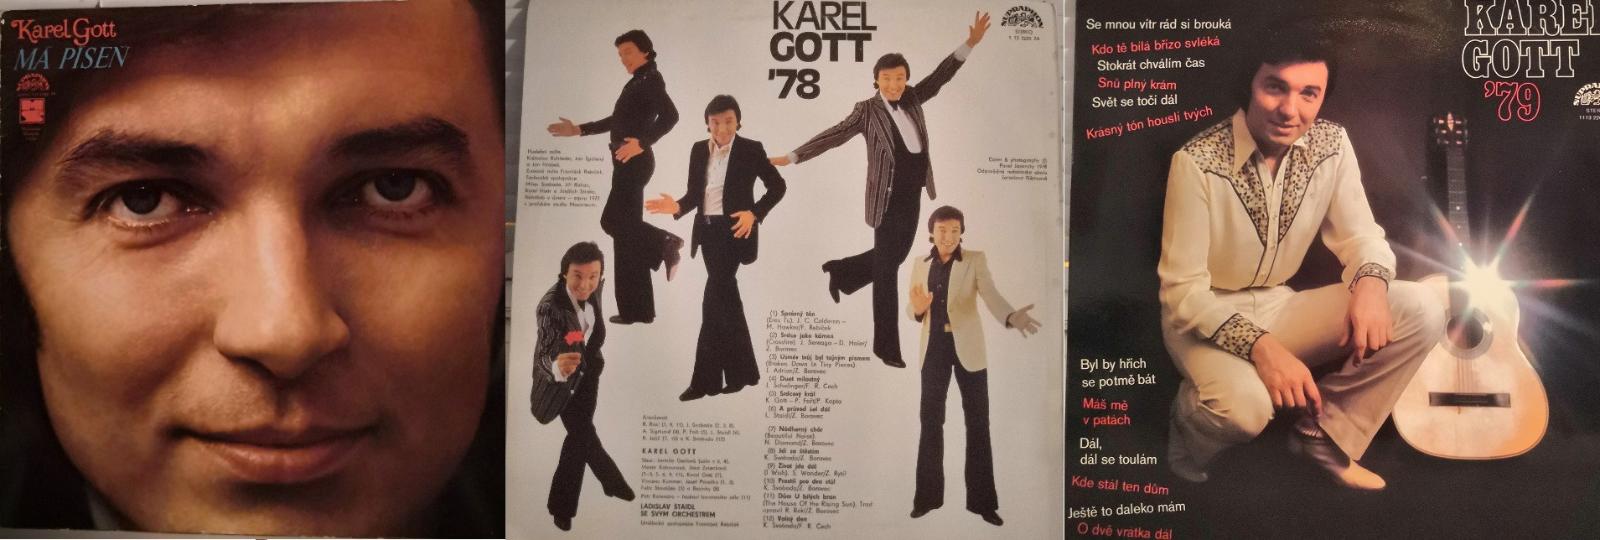 Karel Gott 3xLP - Hudba